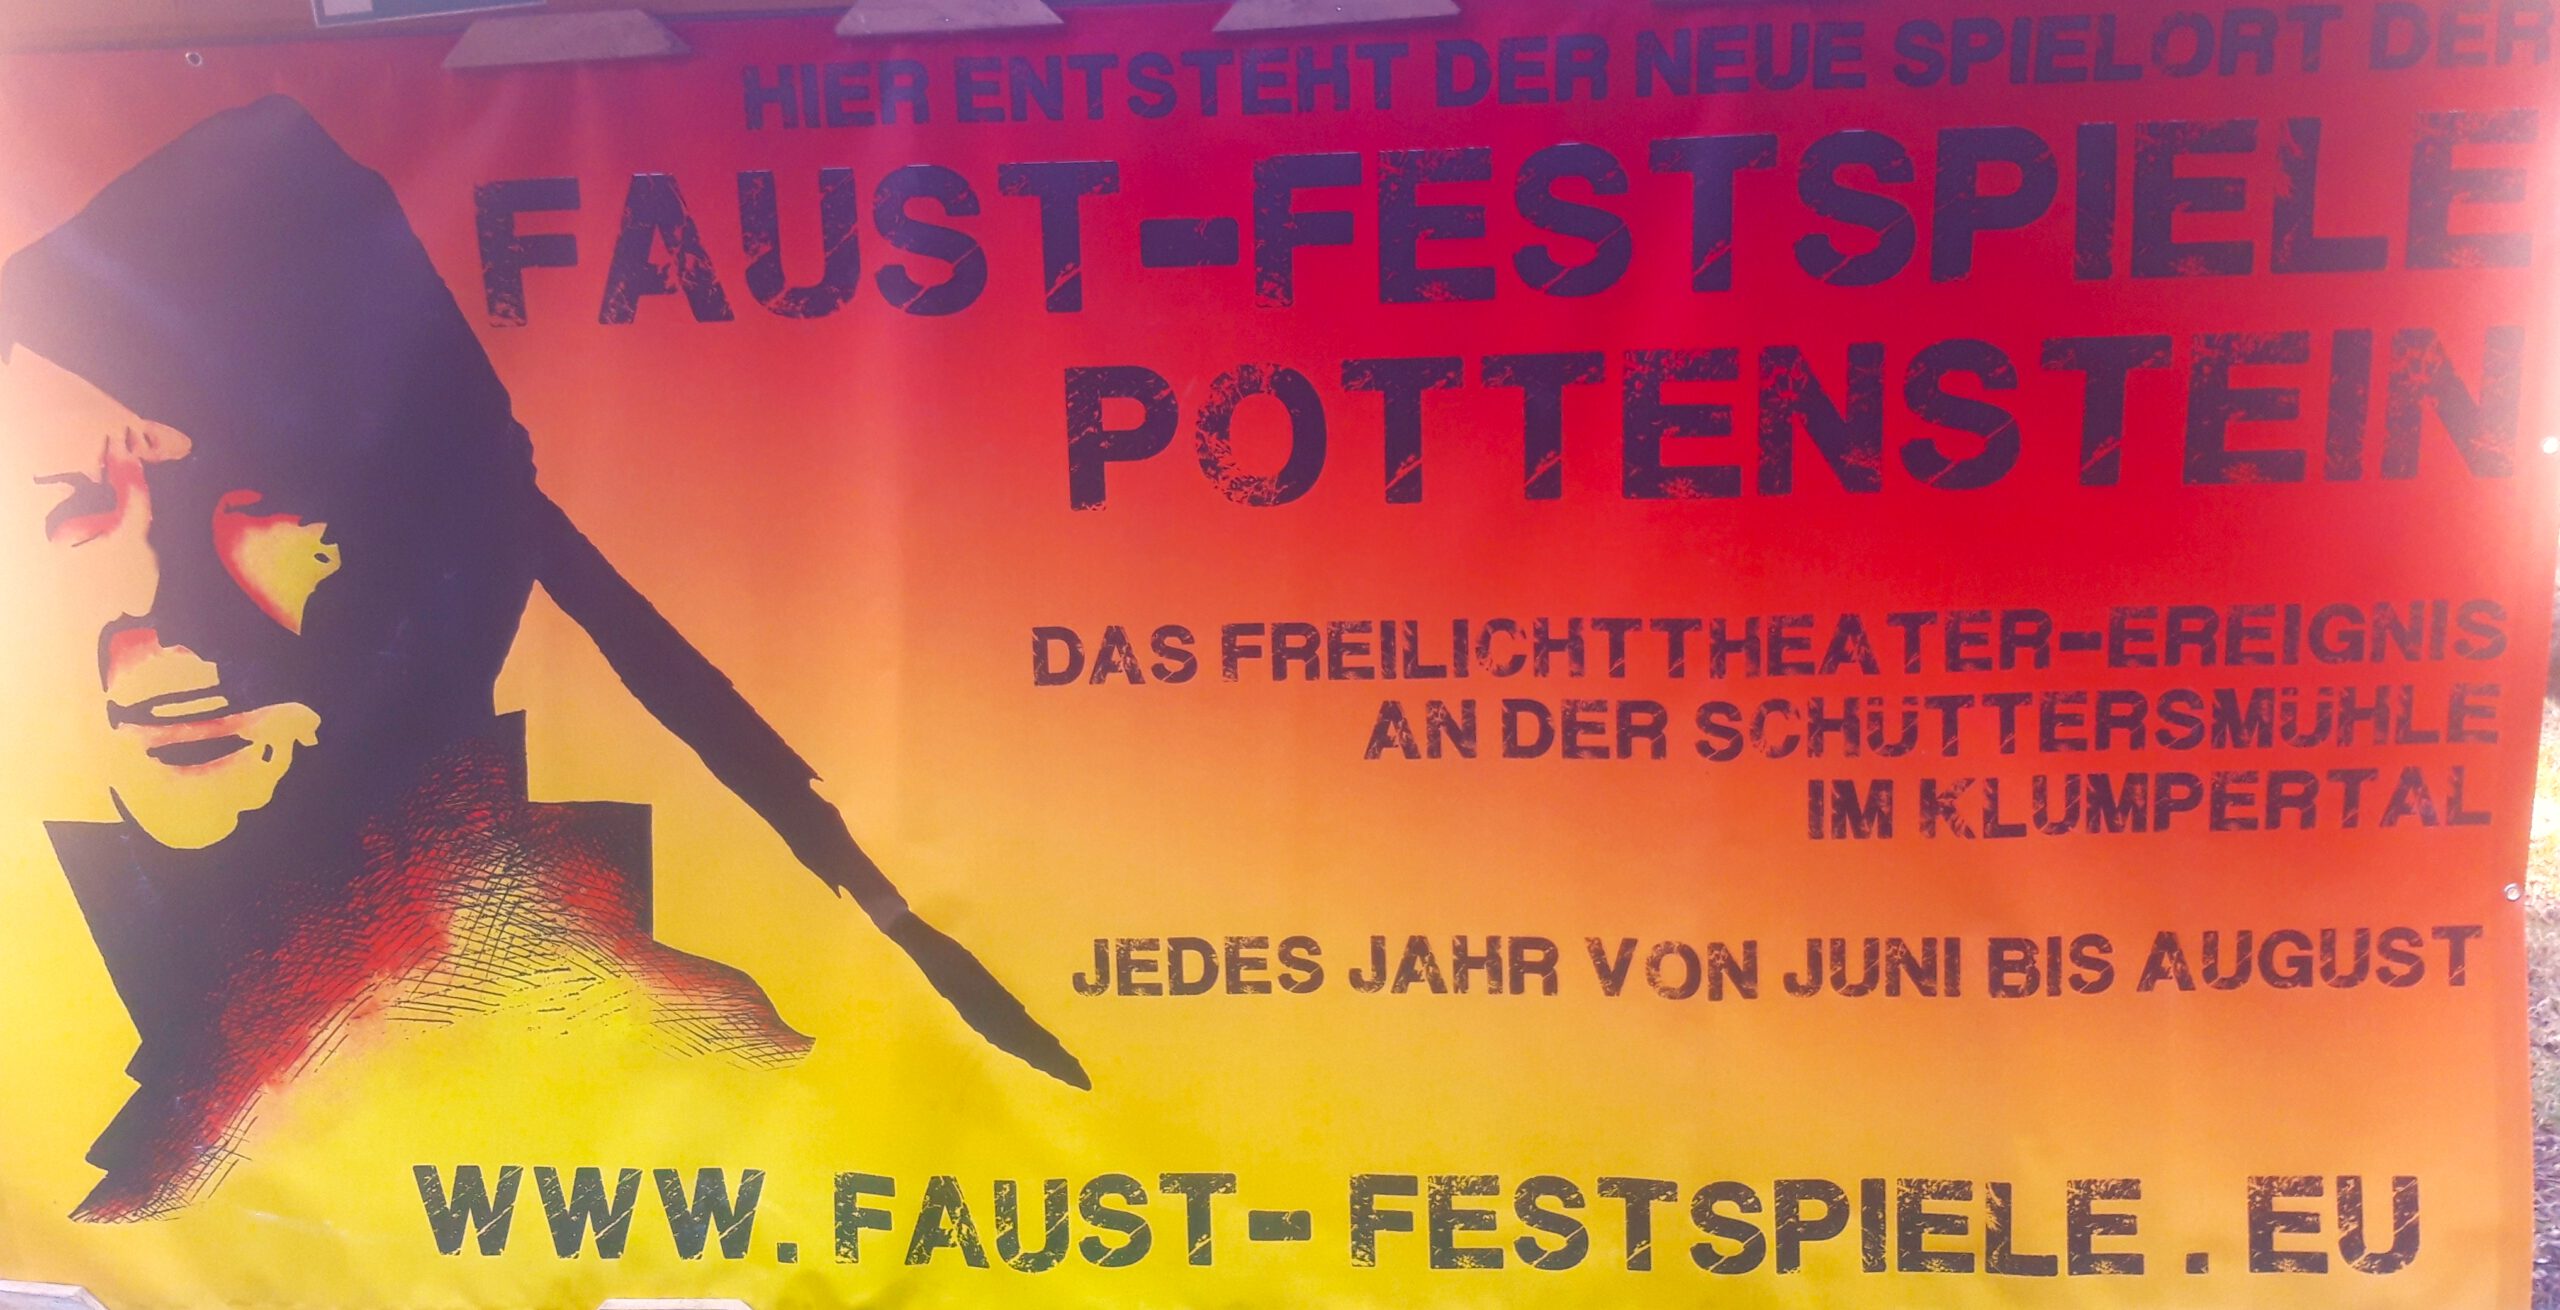 © Faust-Festspiele Pottenstein e.V.